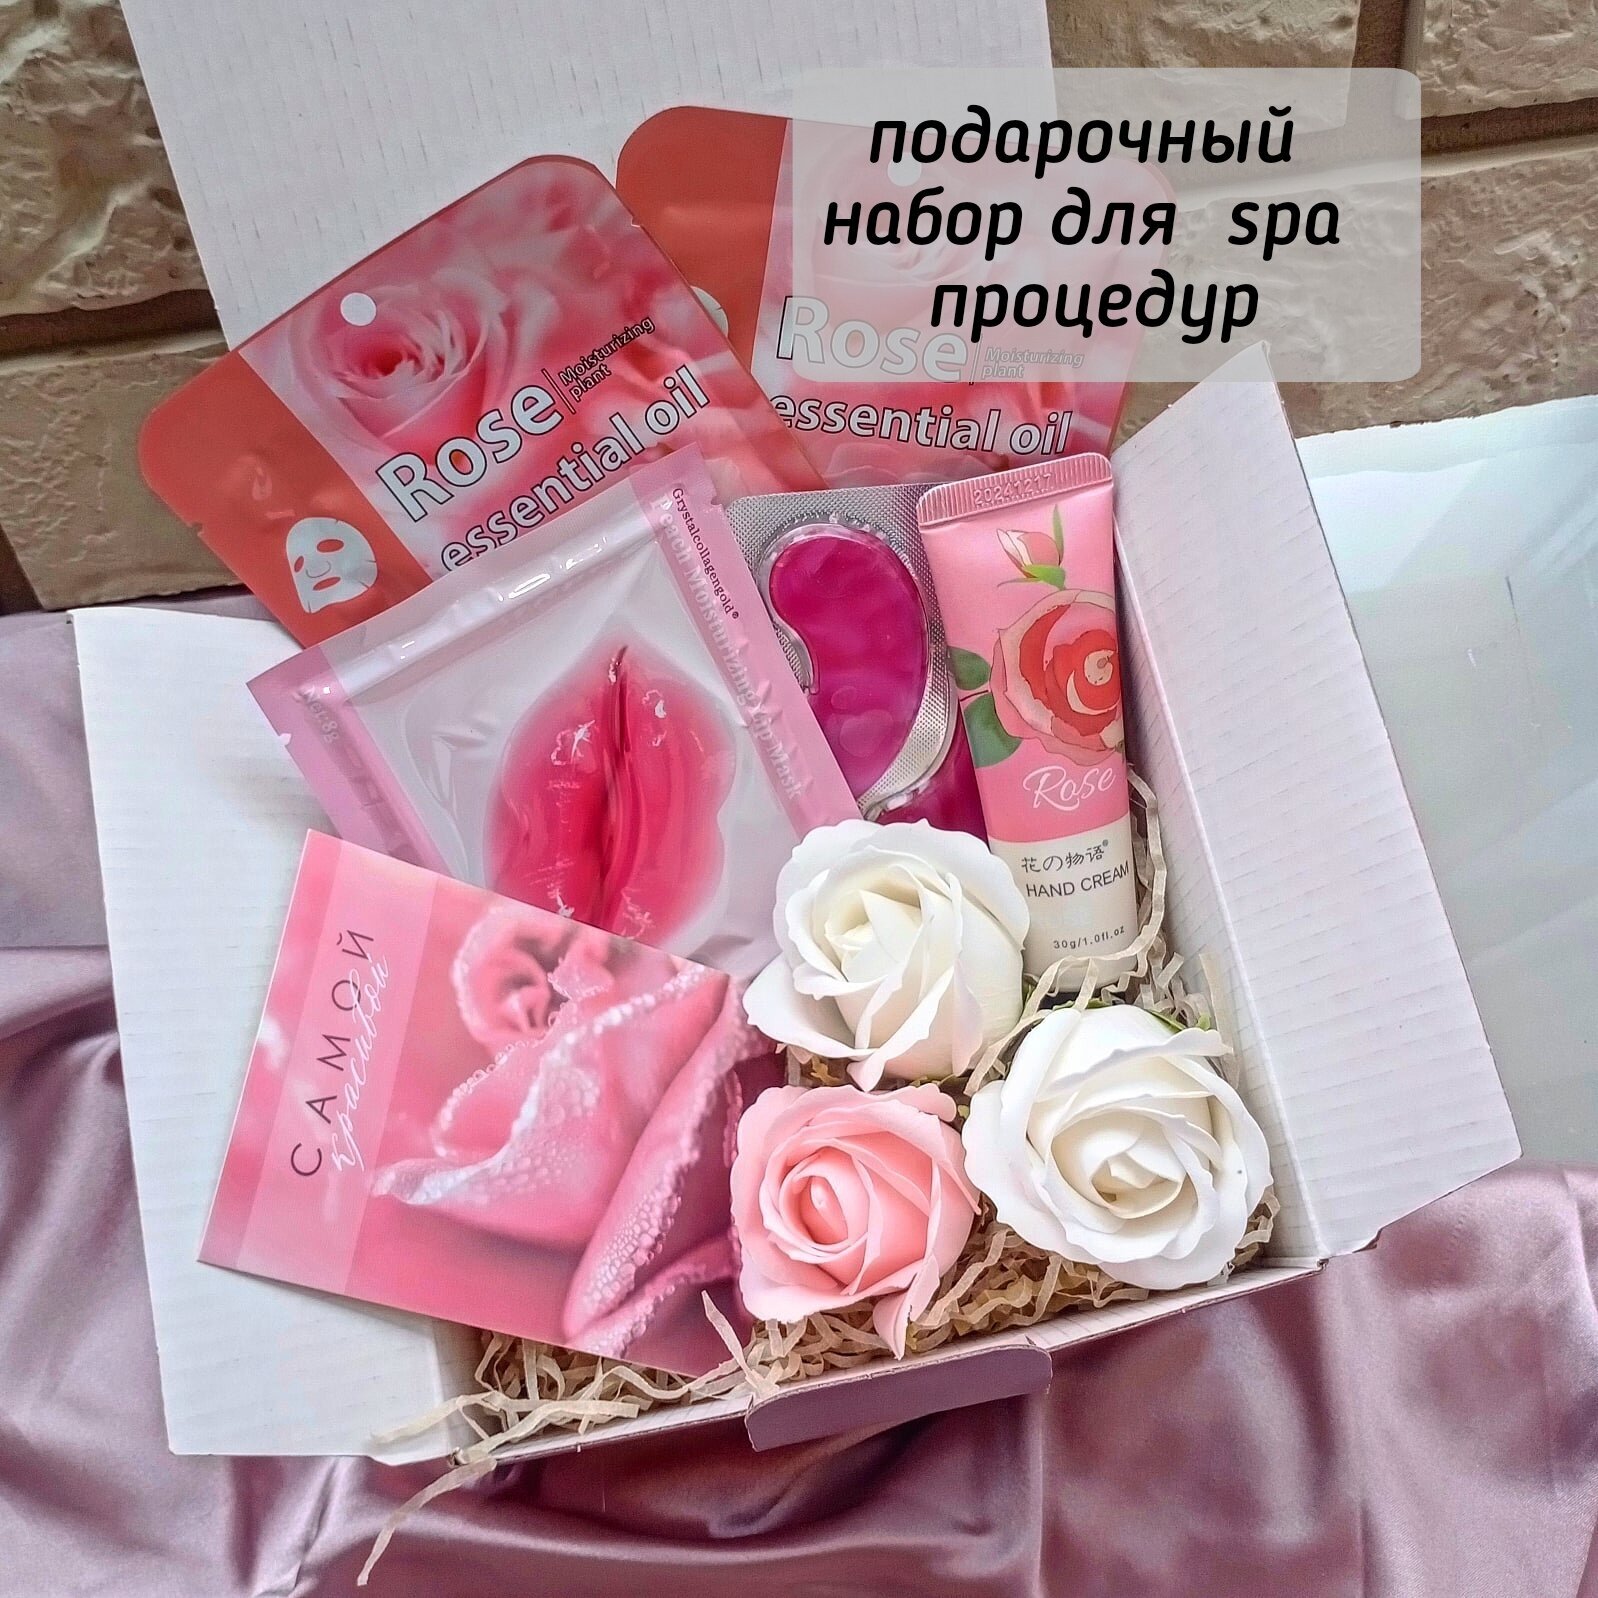 Подарочный набор для женщин, подарок на 8 марта коллегам, подарок на день рождения, бьюти бокс, подарок девушке, подарок девочке \Тканевые маски, патчи, крем, розы из мыла